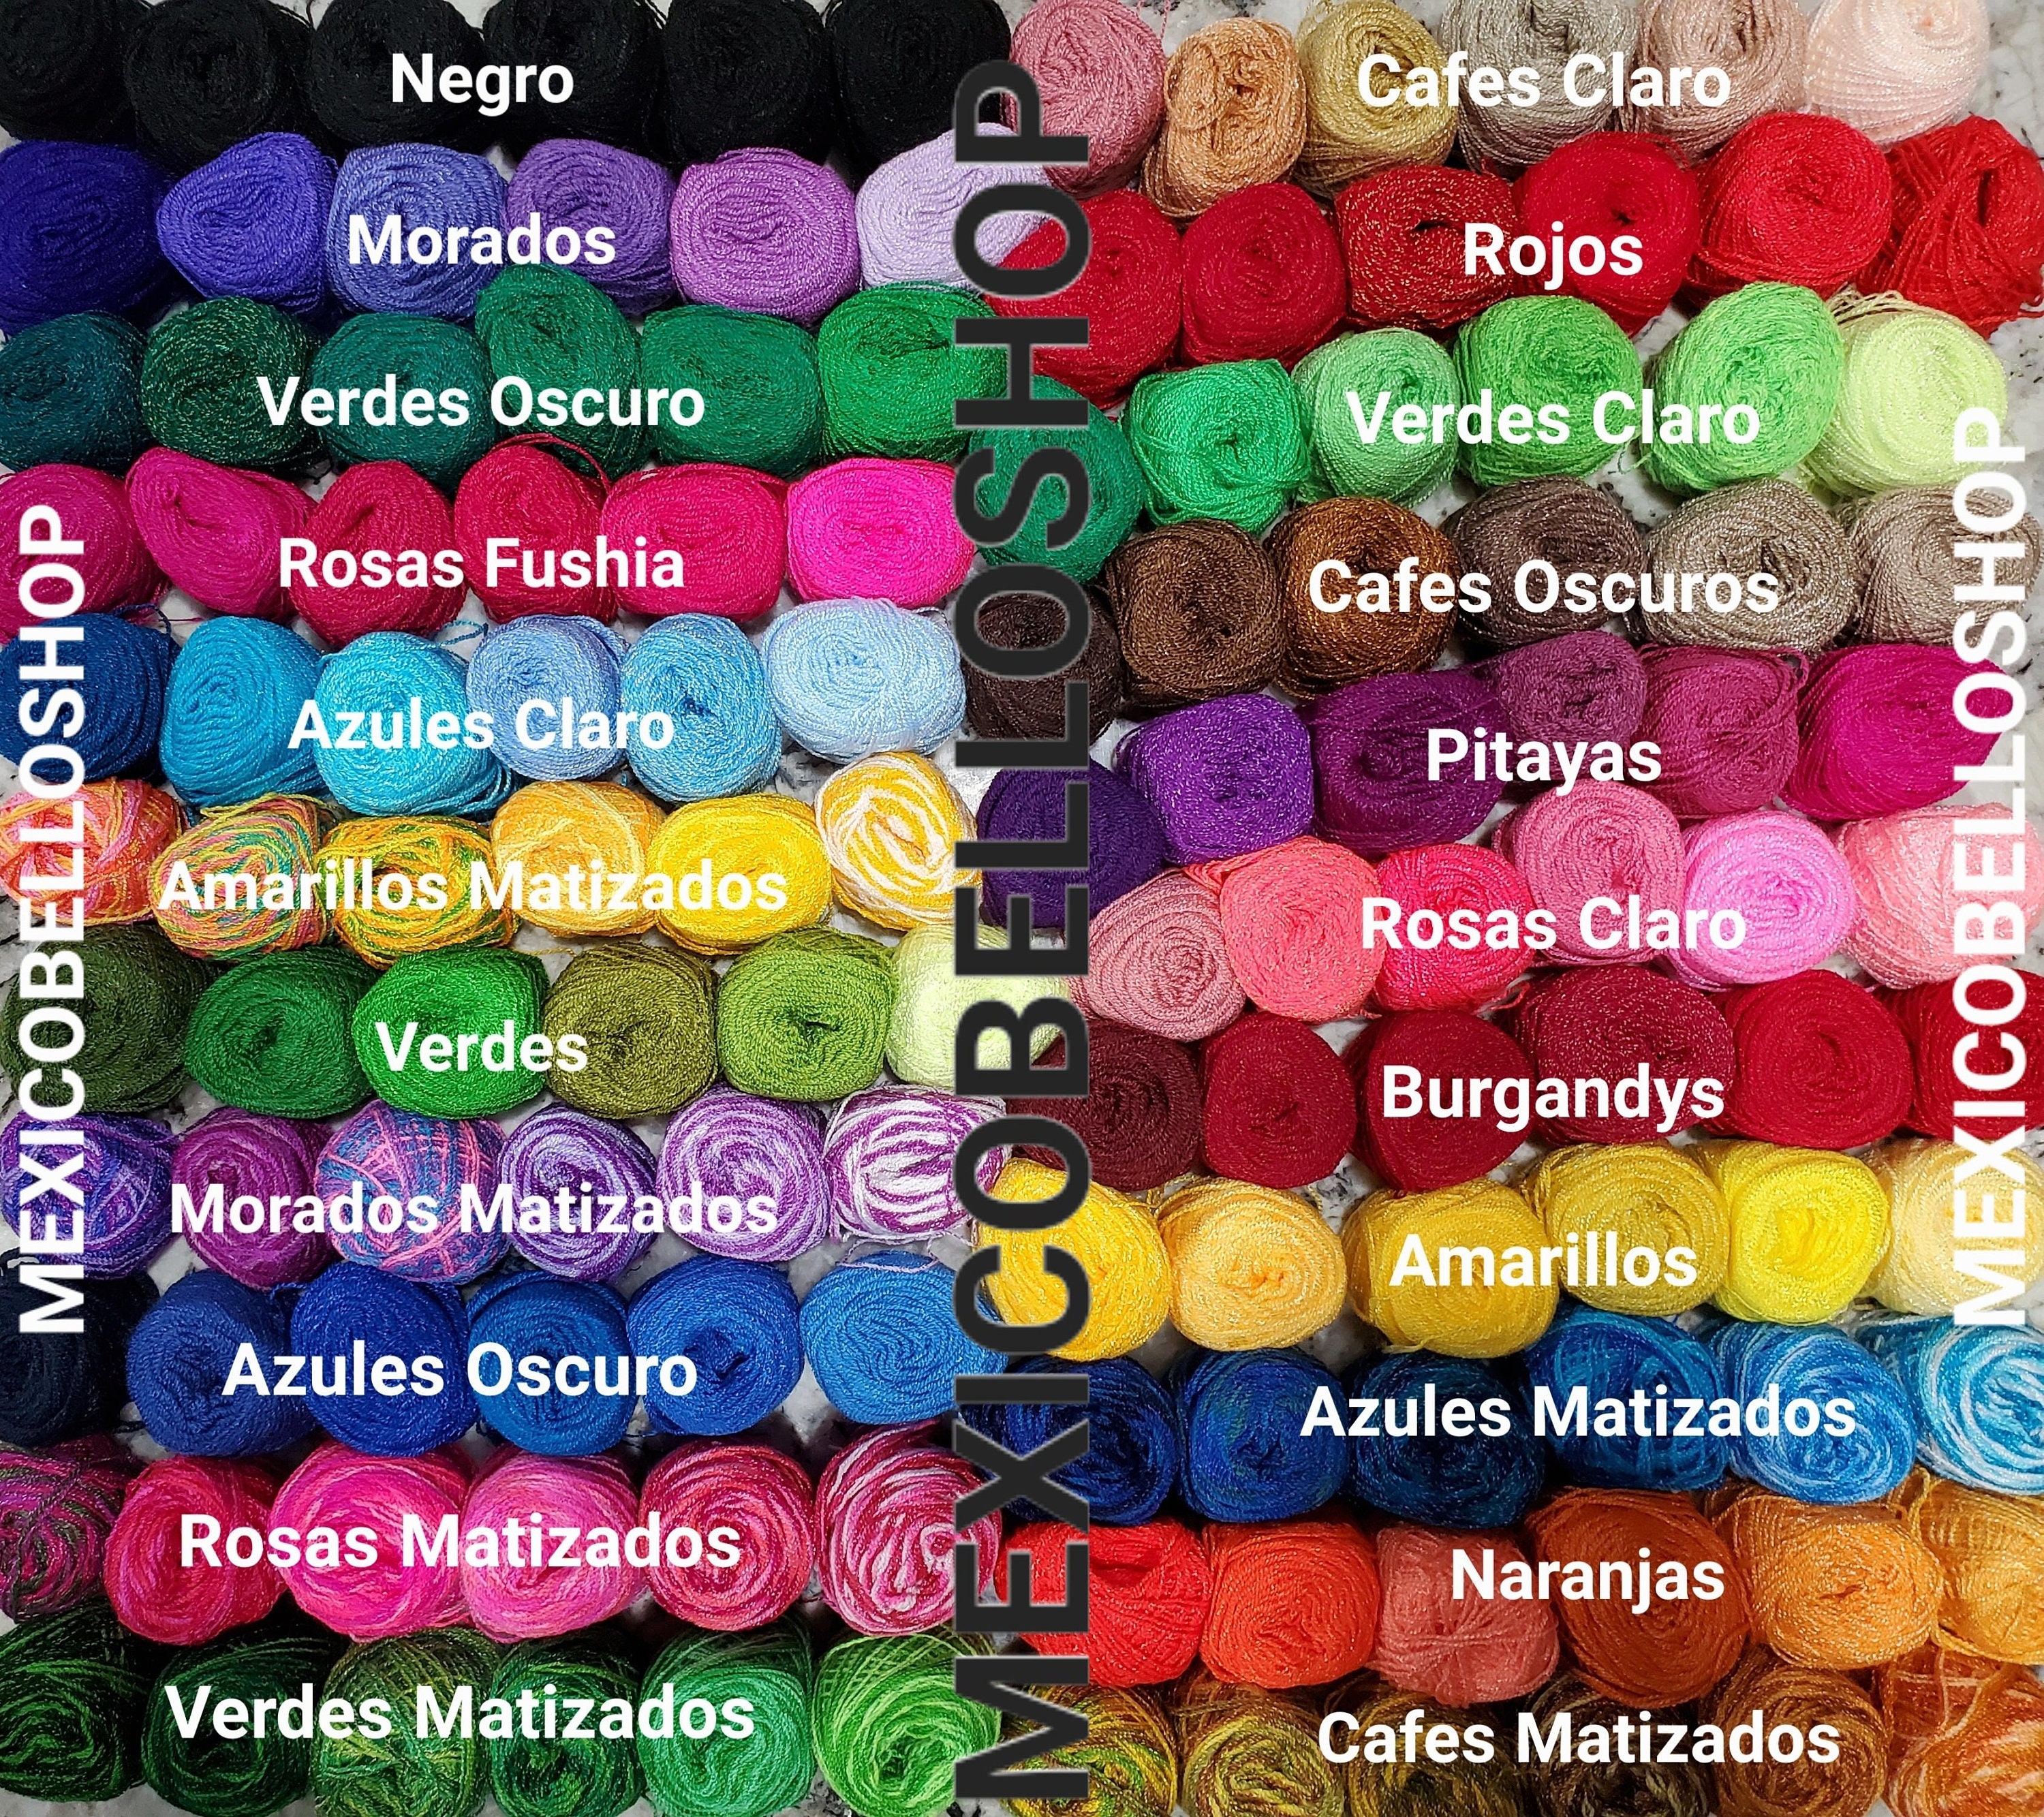 Hilo/Estambre Cristal para Tejer/Bordar Crochet a Mano de Mexico, (Paquete  de 6) Multicolor | Hilo de cristal de México a ganchillo multicolor